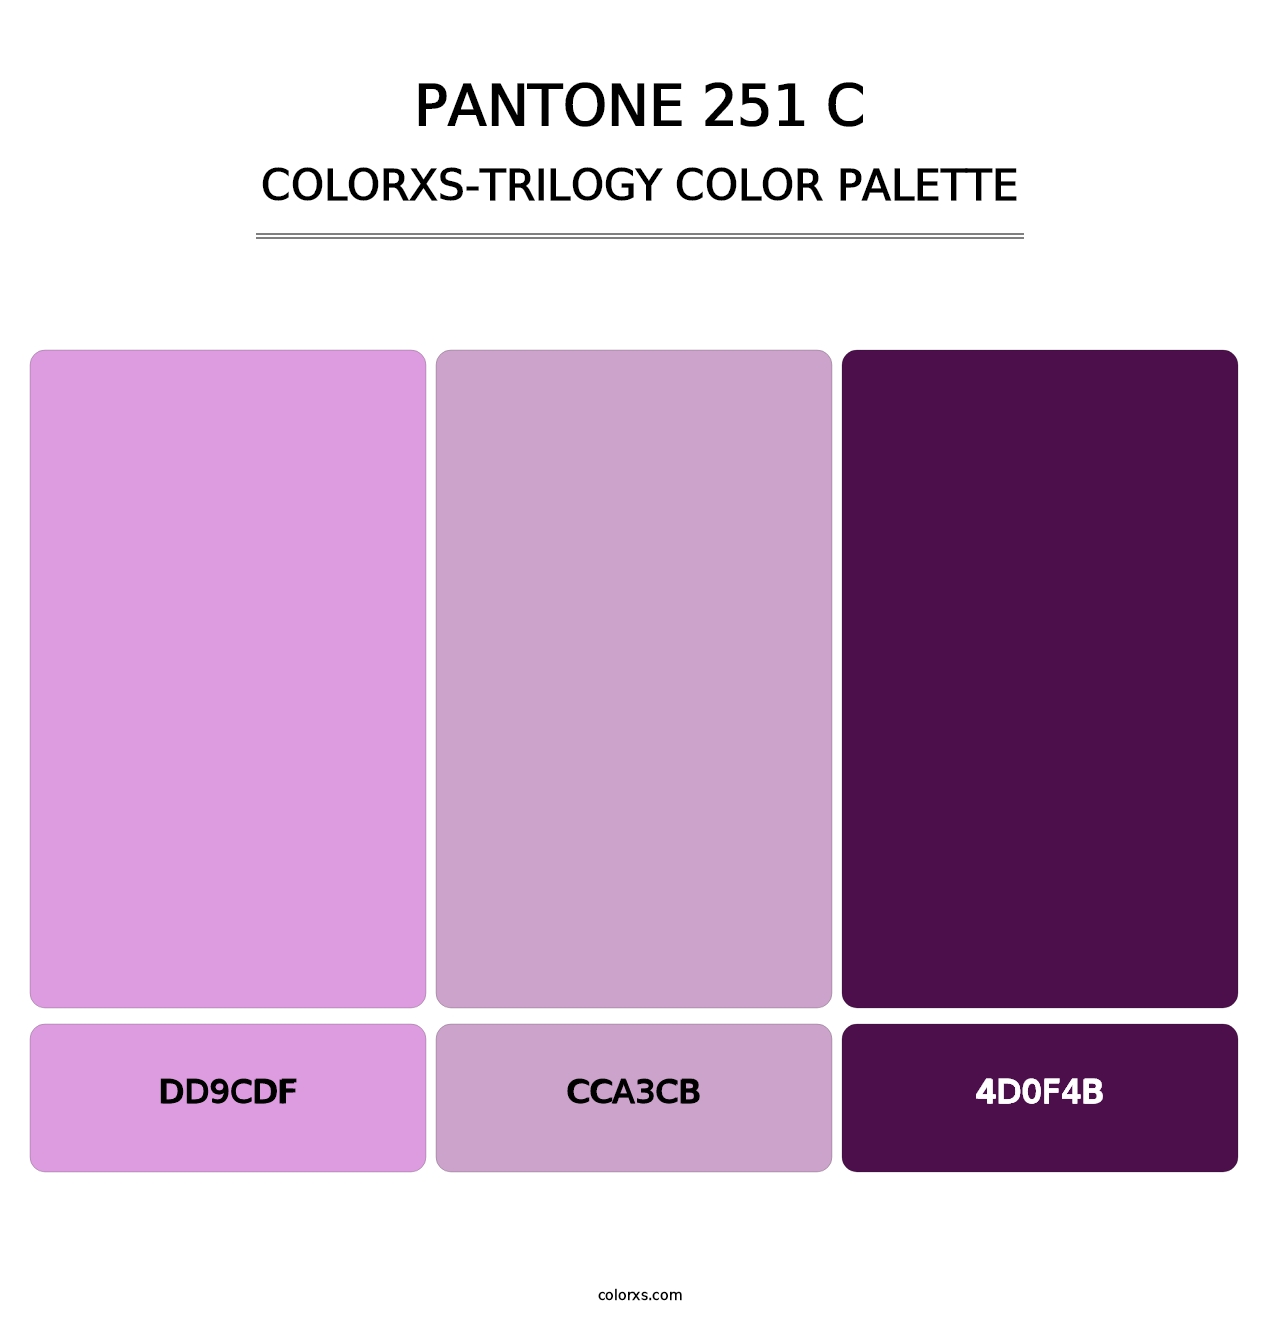 PANTONE 251 C - Colorxs Trilogy Palette